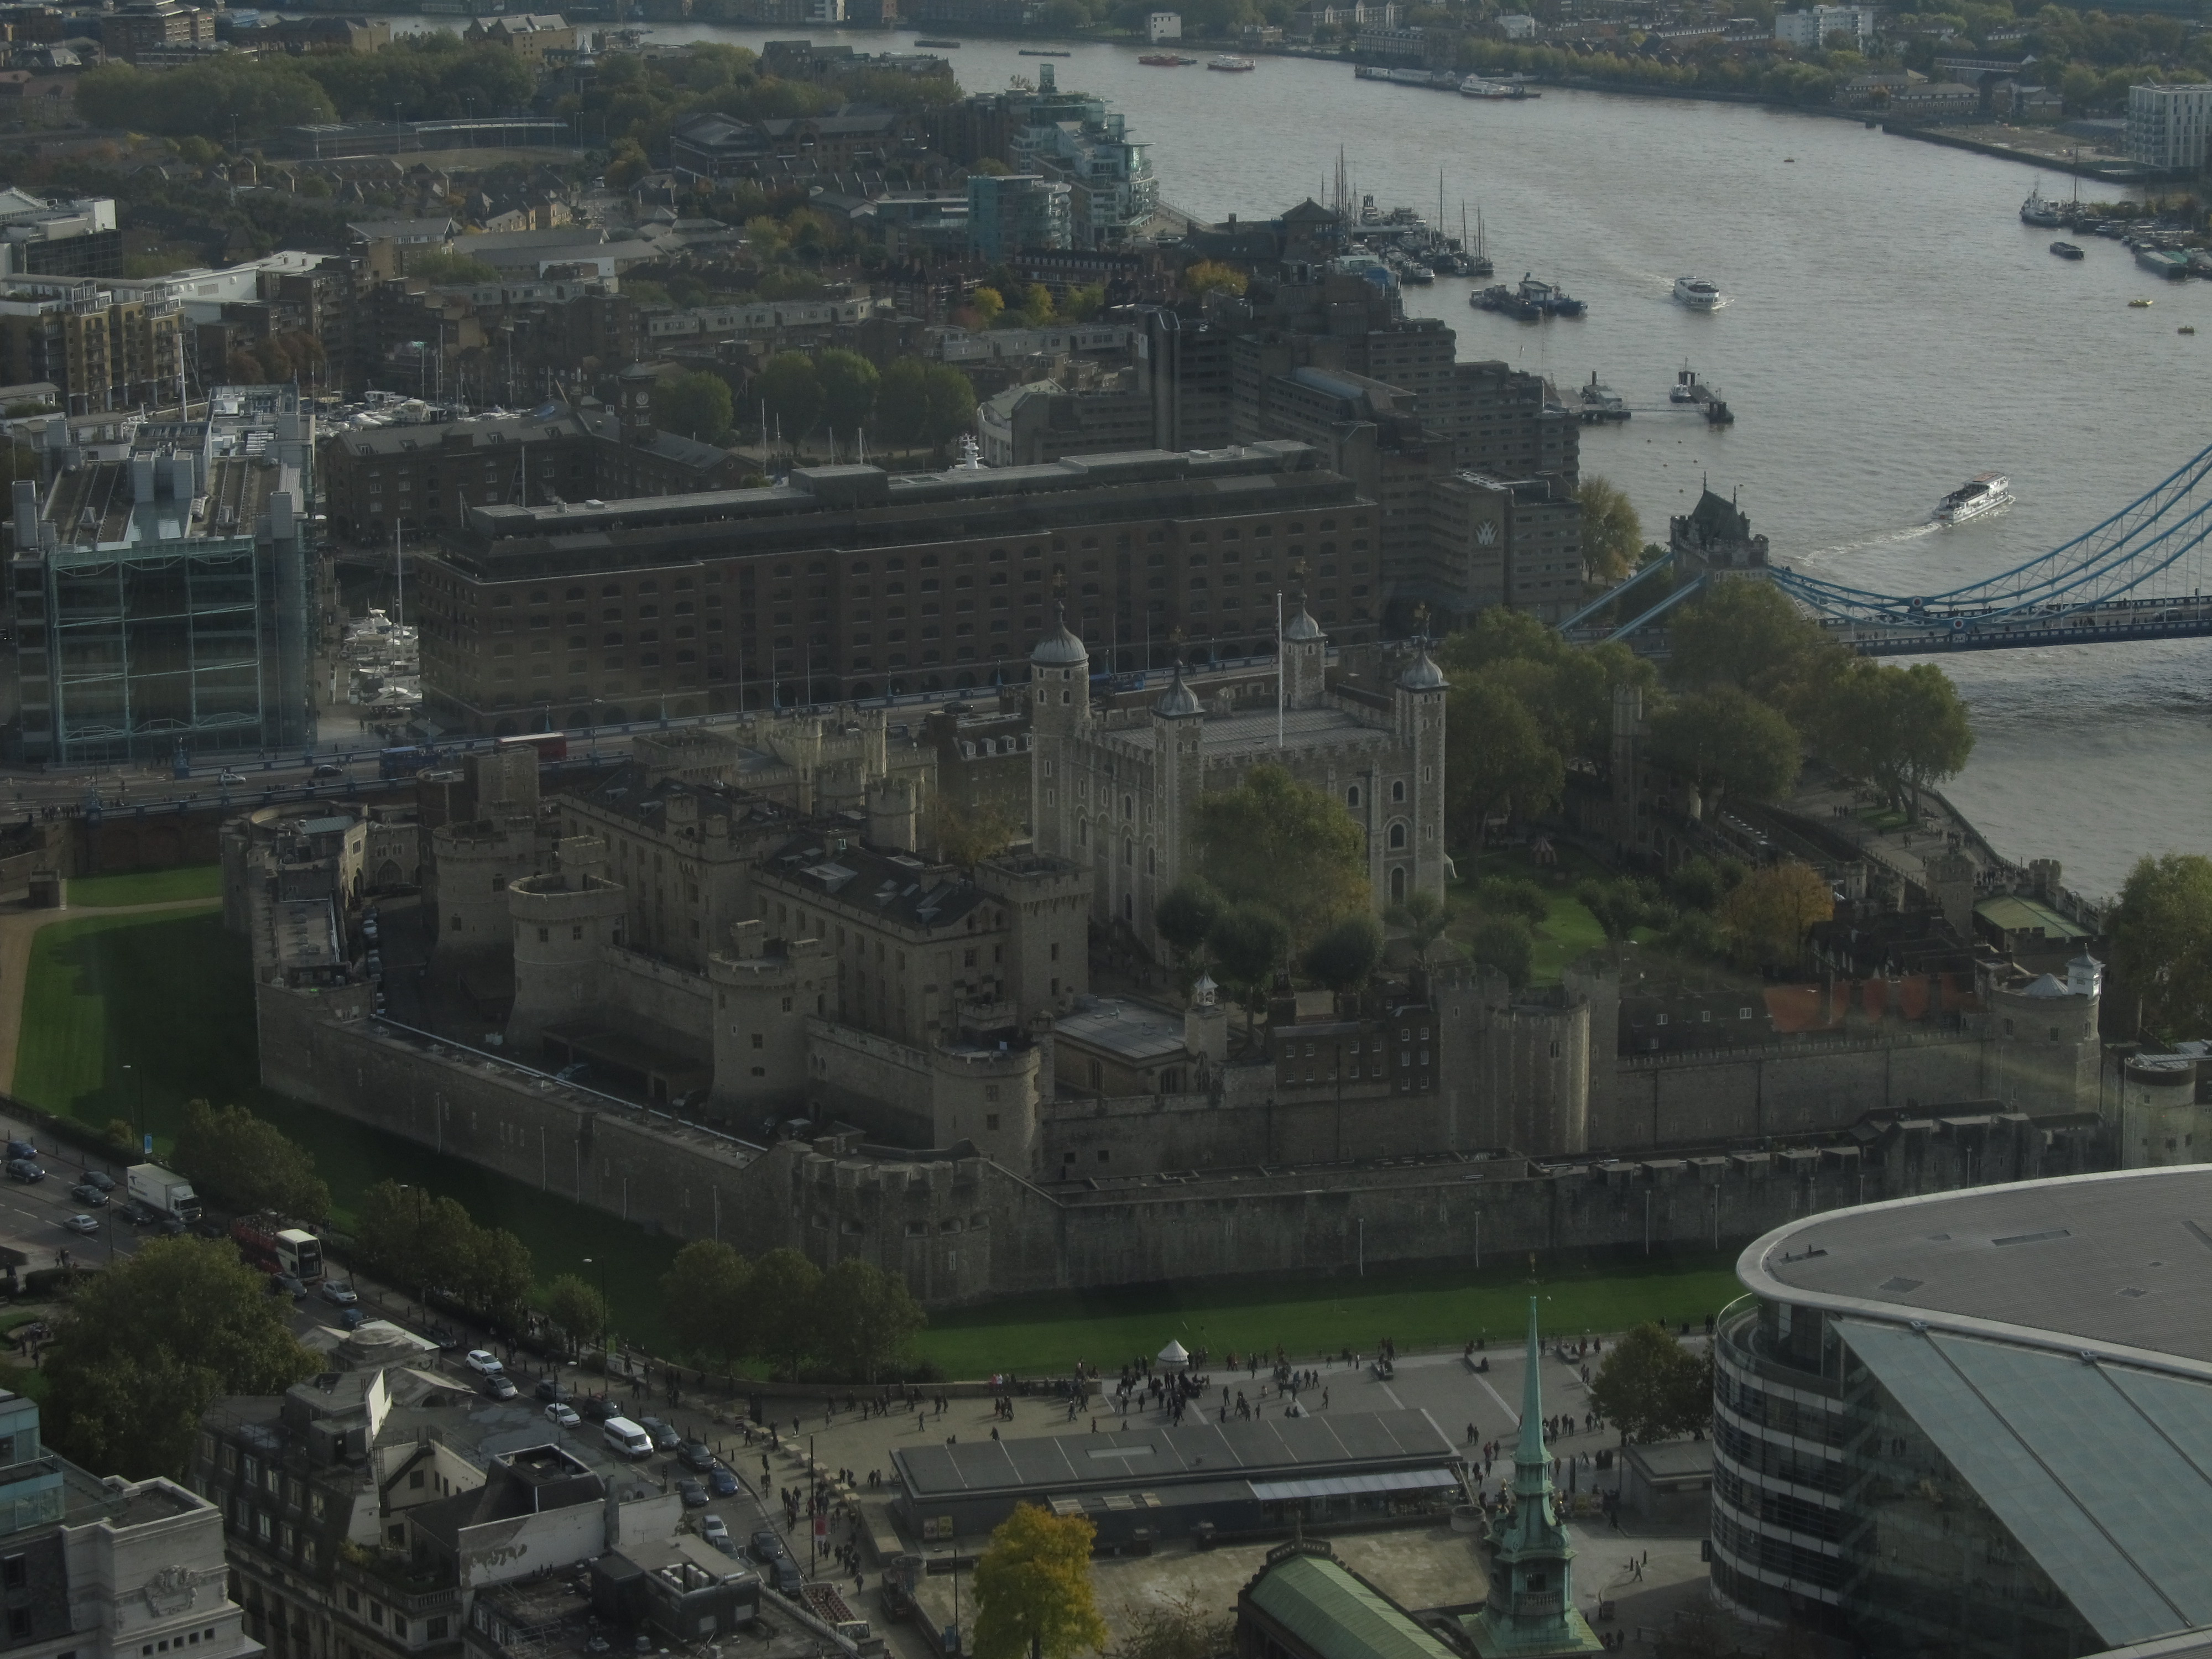 Tower of London seen from Walkie Talkie Sky Garden